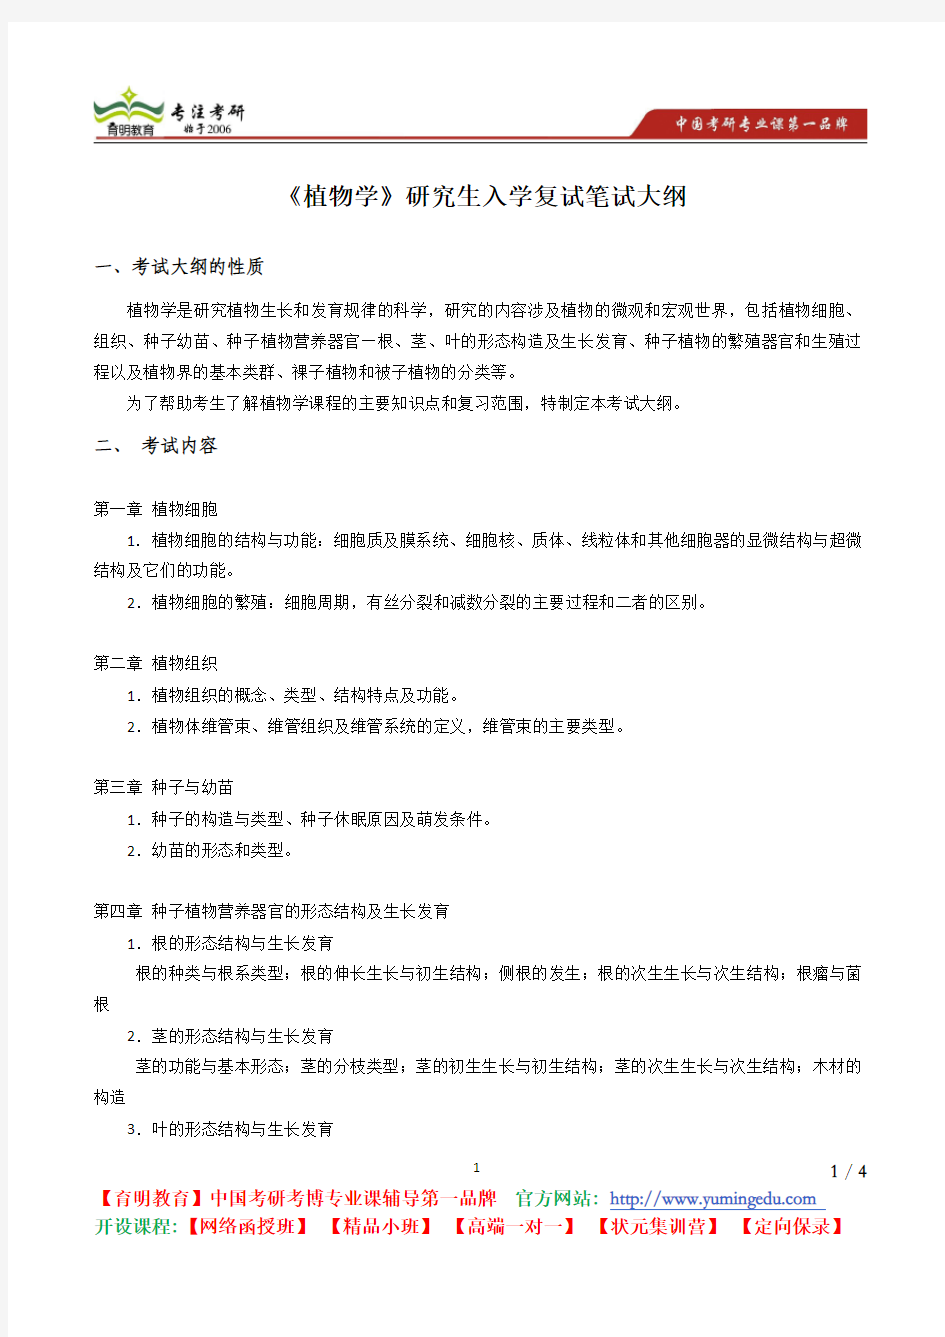 北京林业大学 2011《714 植物学》考试大纲 考试内容 复习参考书 考研辅导